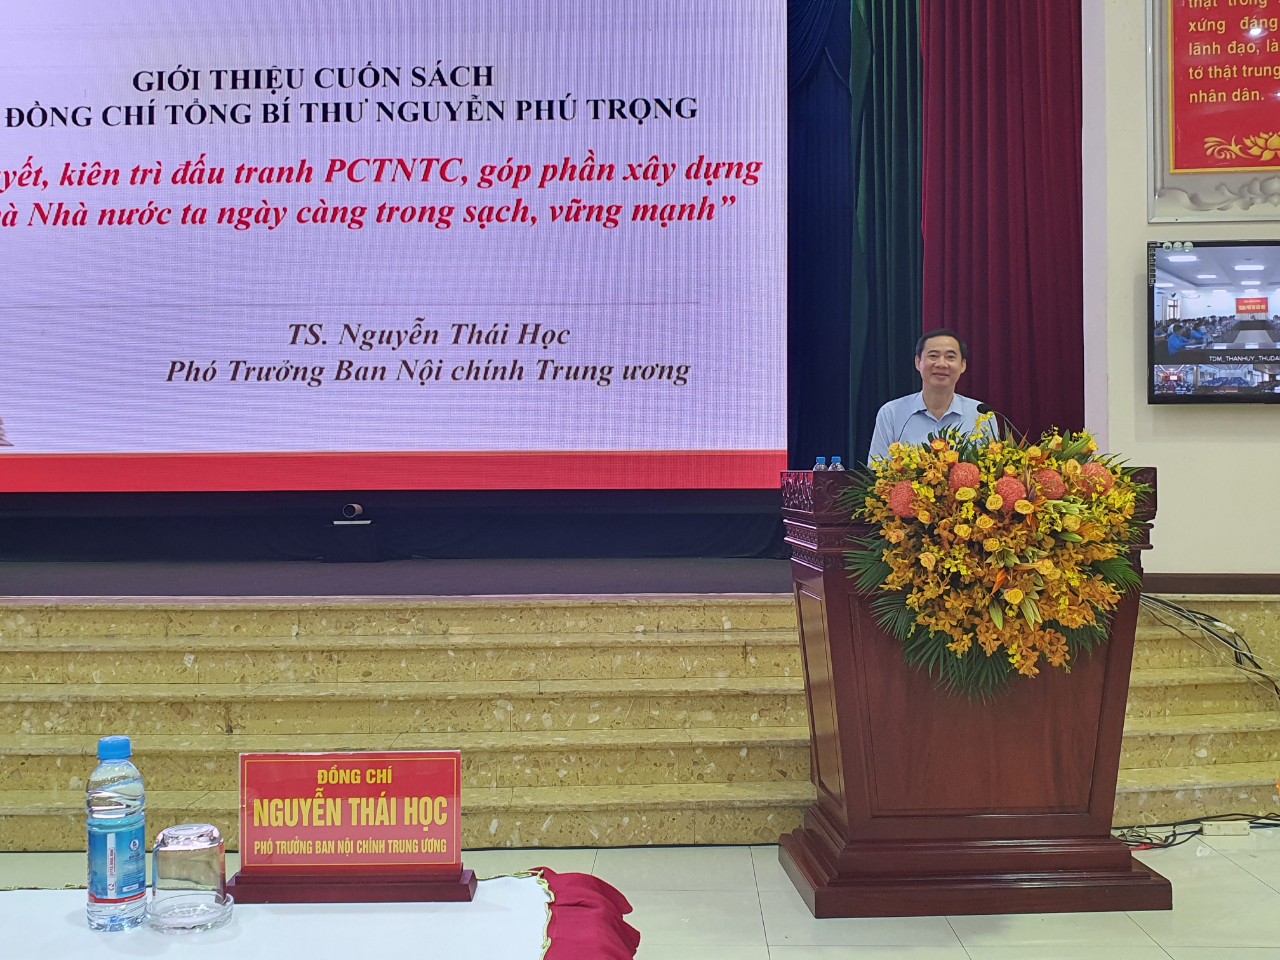 Đồng chí Nguyễn Thái Học, Phó Trưởng Ban Nội chính Trung ương giới thiệu Cuốn sách tại tỉnh Bình Dương